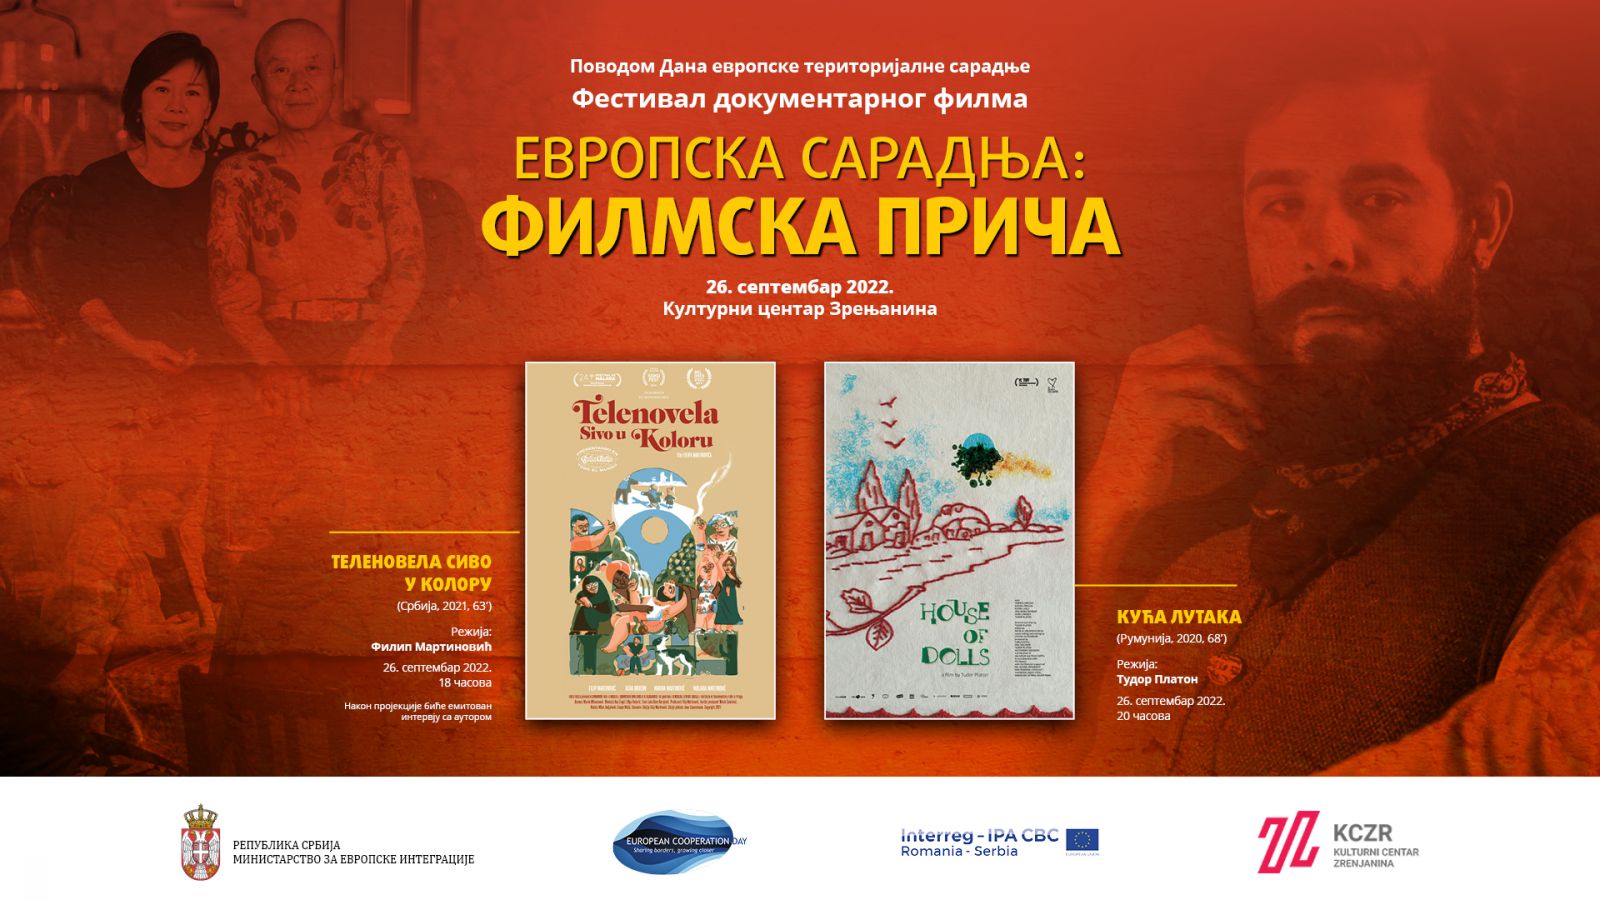 Otvaranje festivala dokumentarnog filma „Evropska saradnja: filmska priča“ u Zrenjaninu